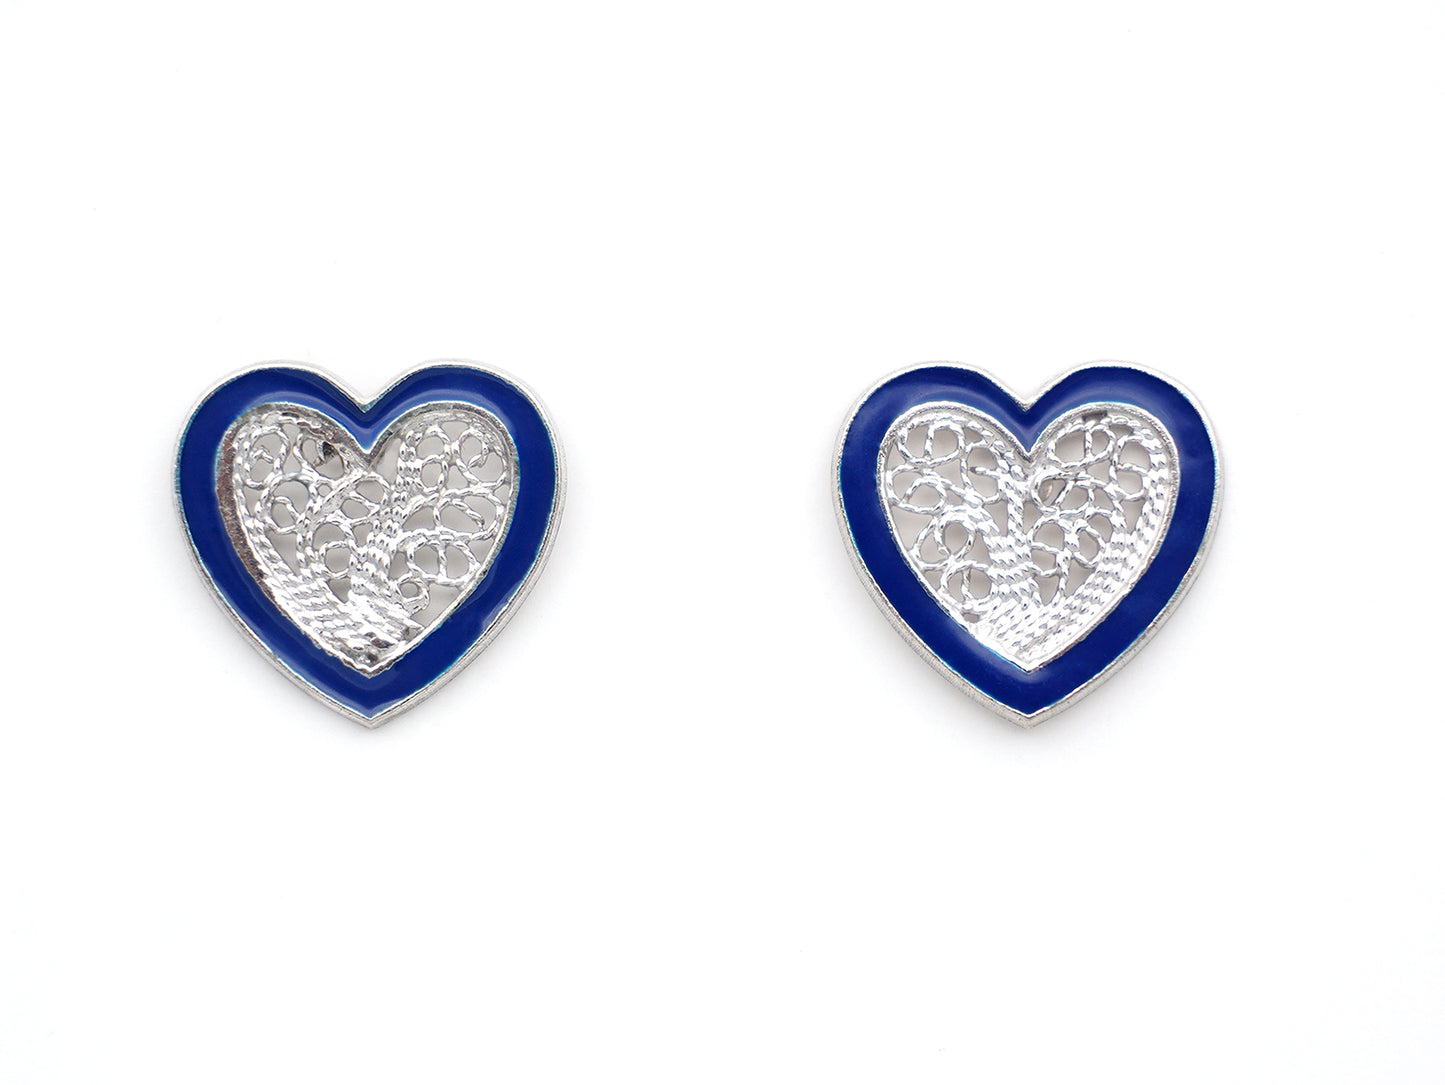 Brincos Coração Pequeno Esmalte Azul, Filigrana Portuguesa, Prata de Lei 925 - Vista de frente